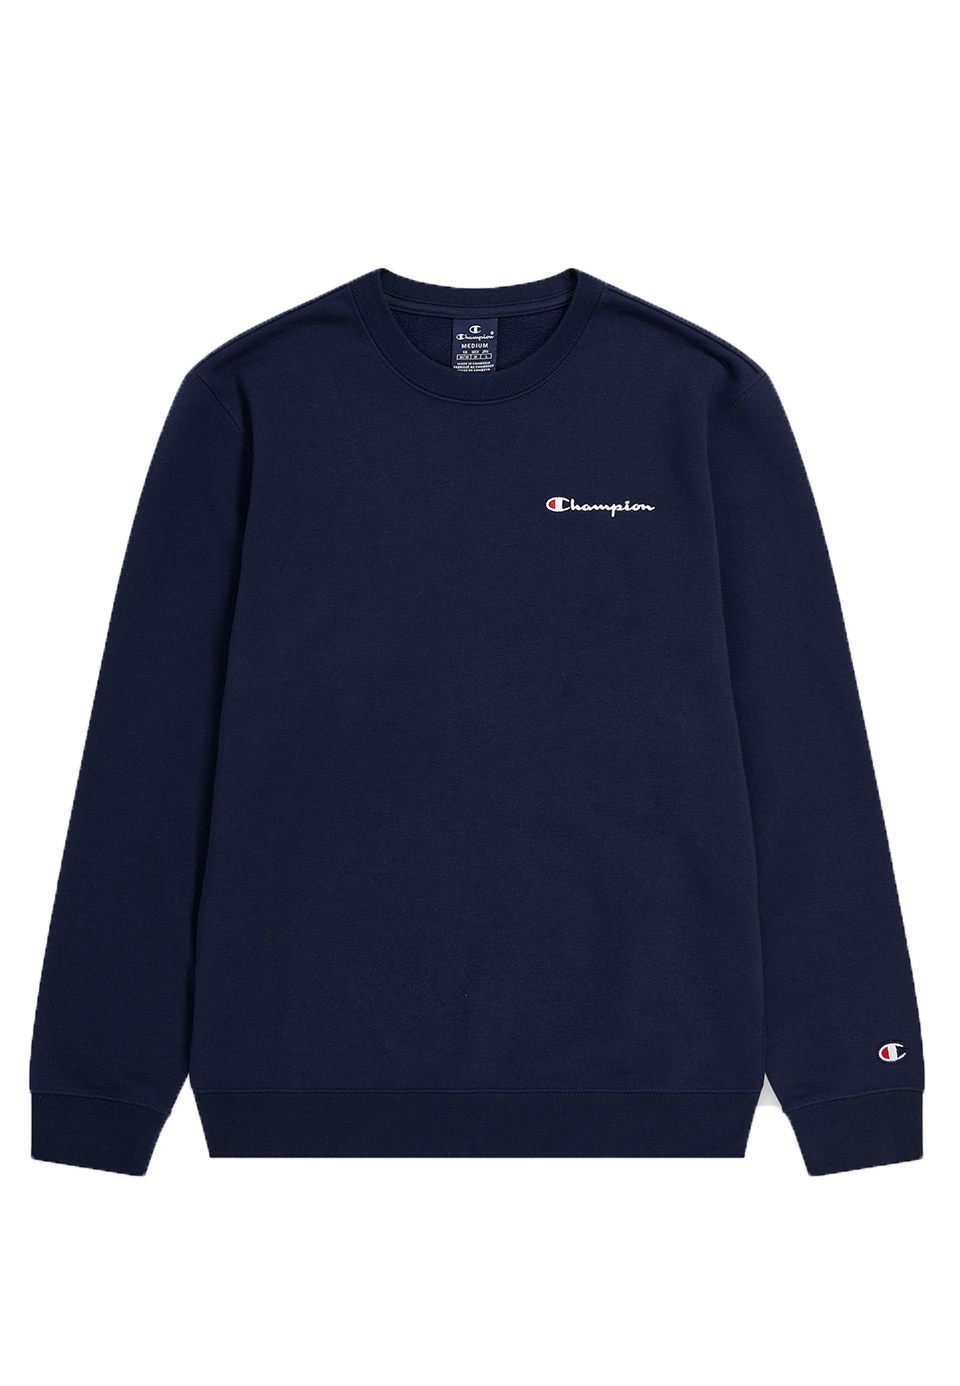 Champion Herren Crewneck Sweatshirt mit kleinem Logo 219836 dunkelblau